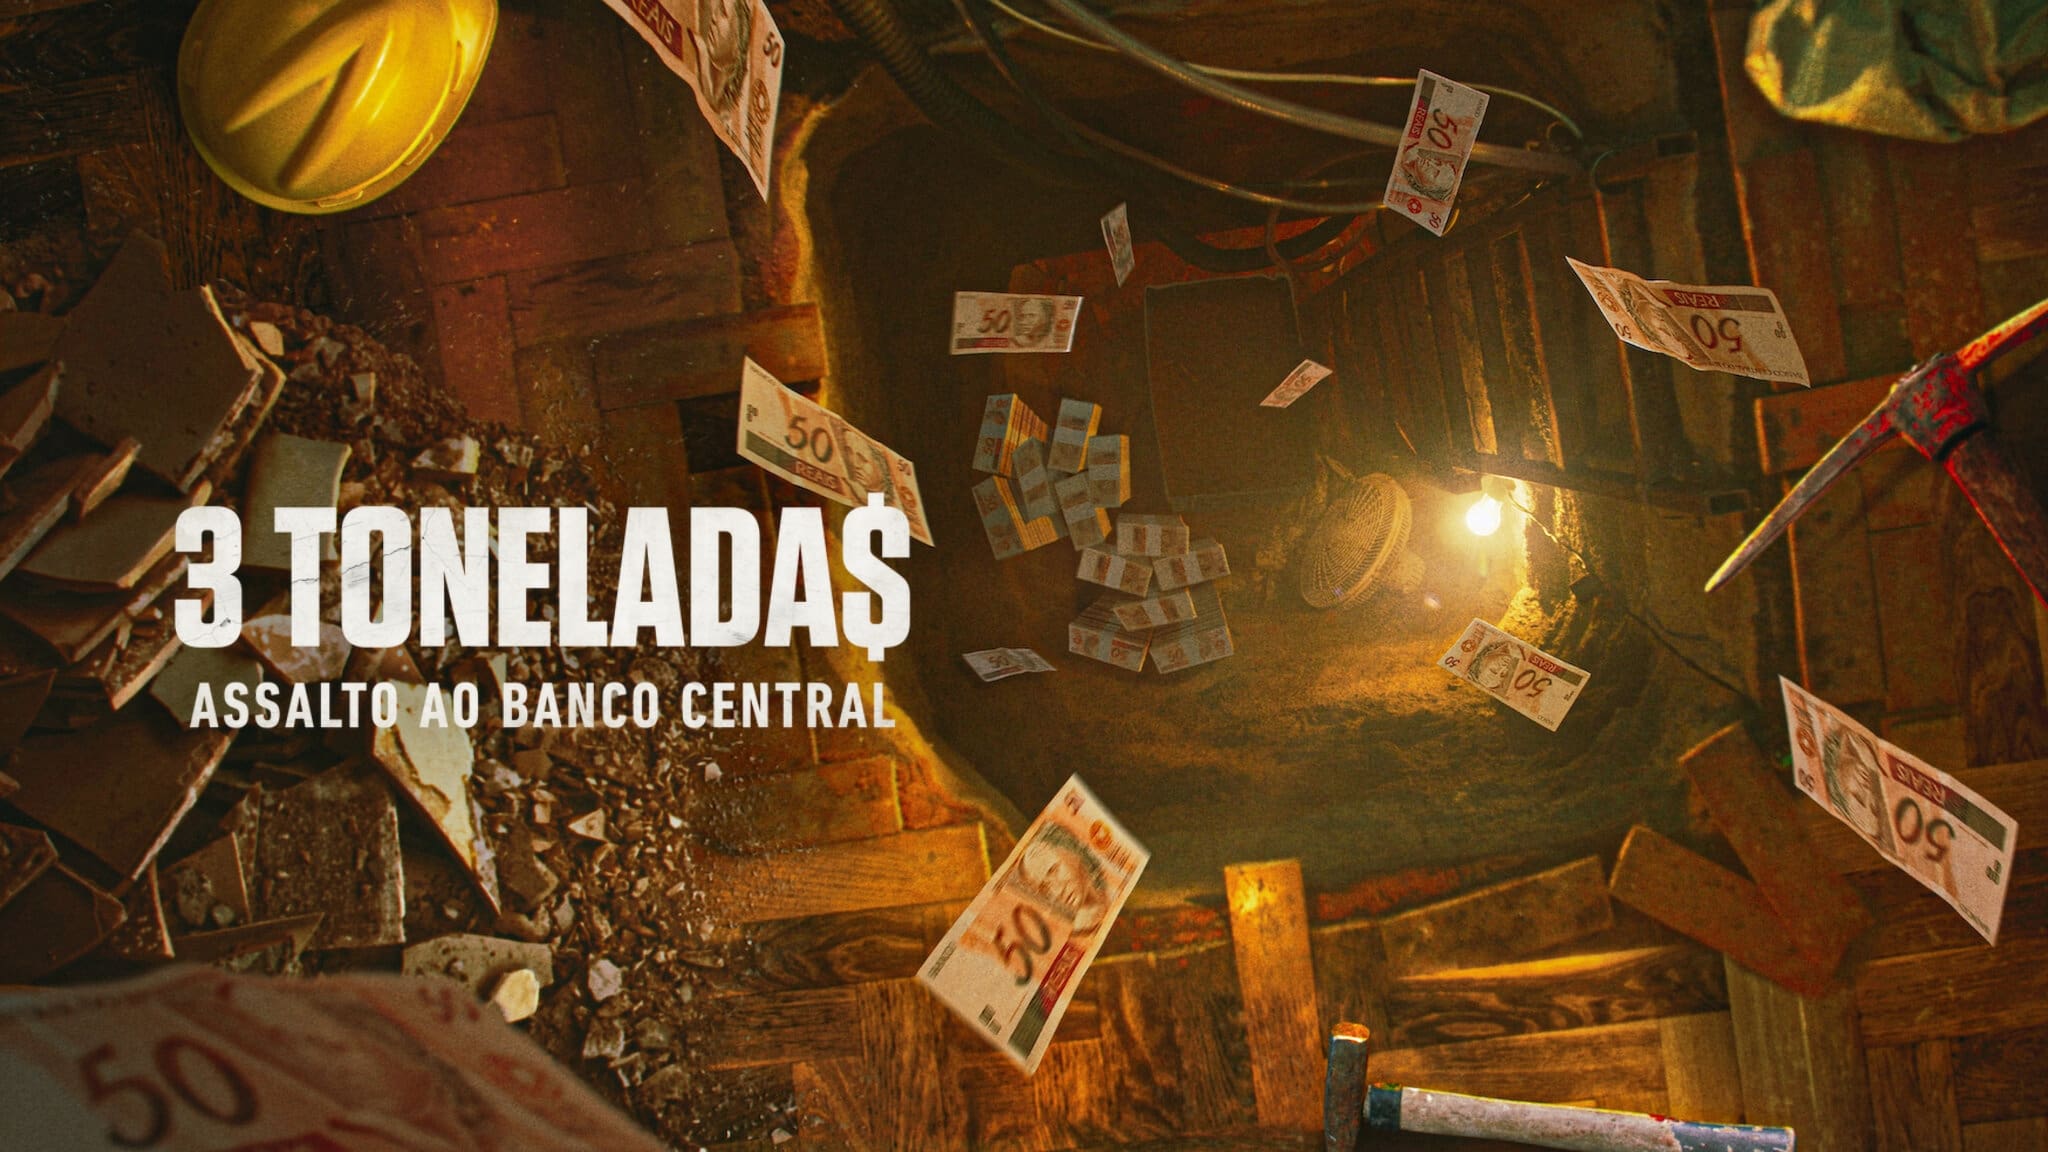 3 tonelada$: Atraco al Banco Central de Brasil